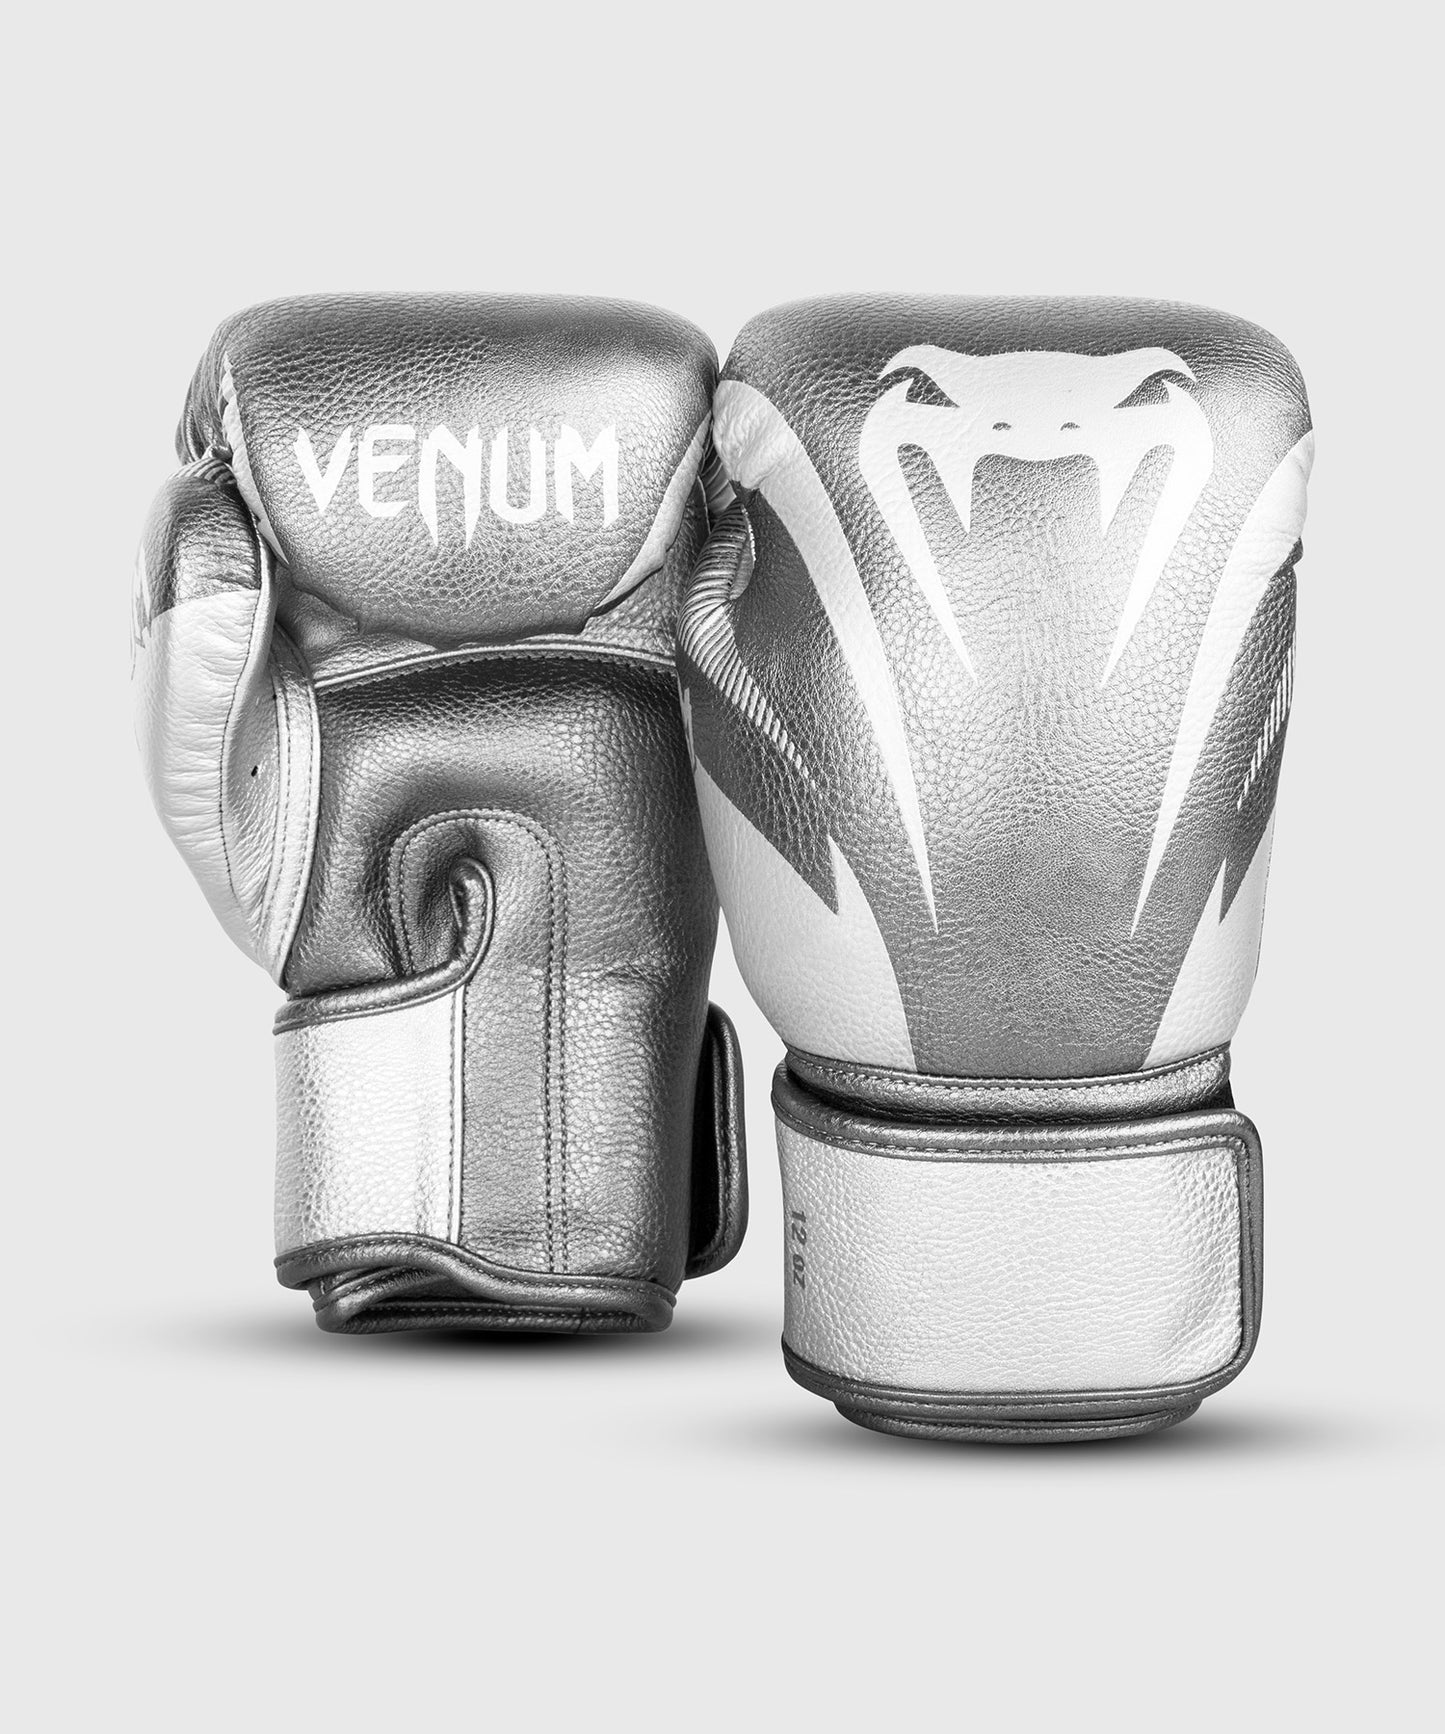 Venum Impact Boxhandschuhe - Silber/Silber